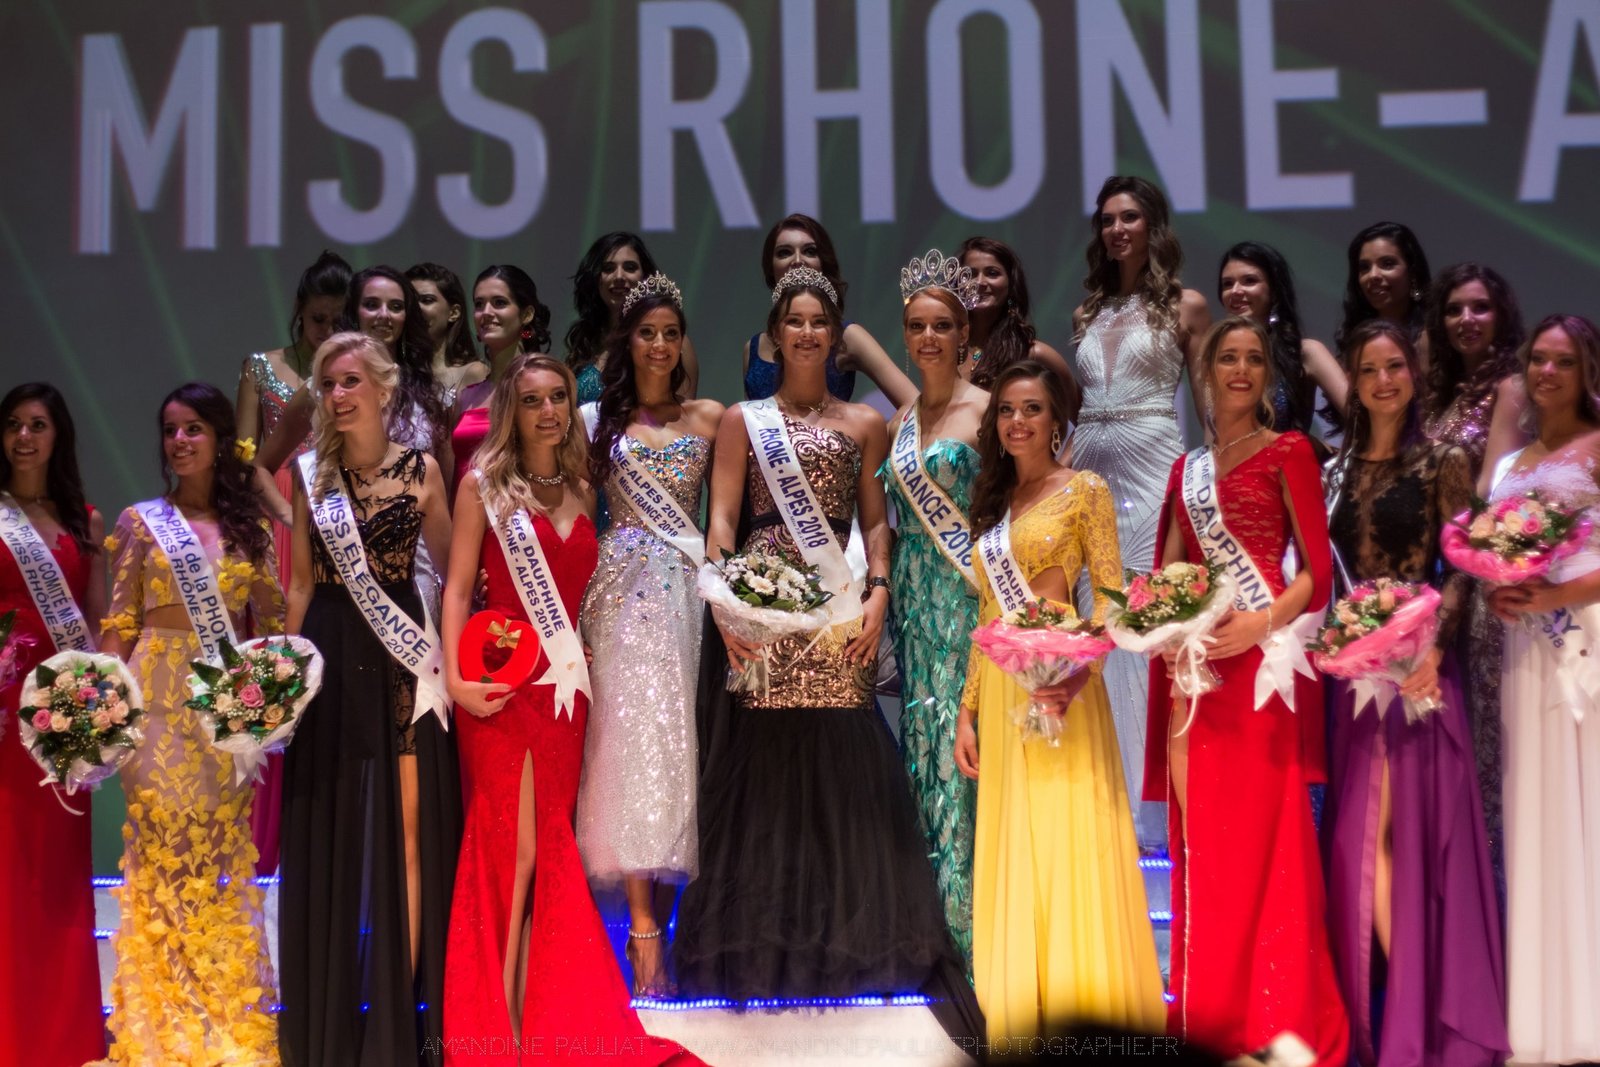 Election Miss Rhône-Alpes 2018 - Amandine Pauliat Photographie